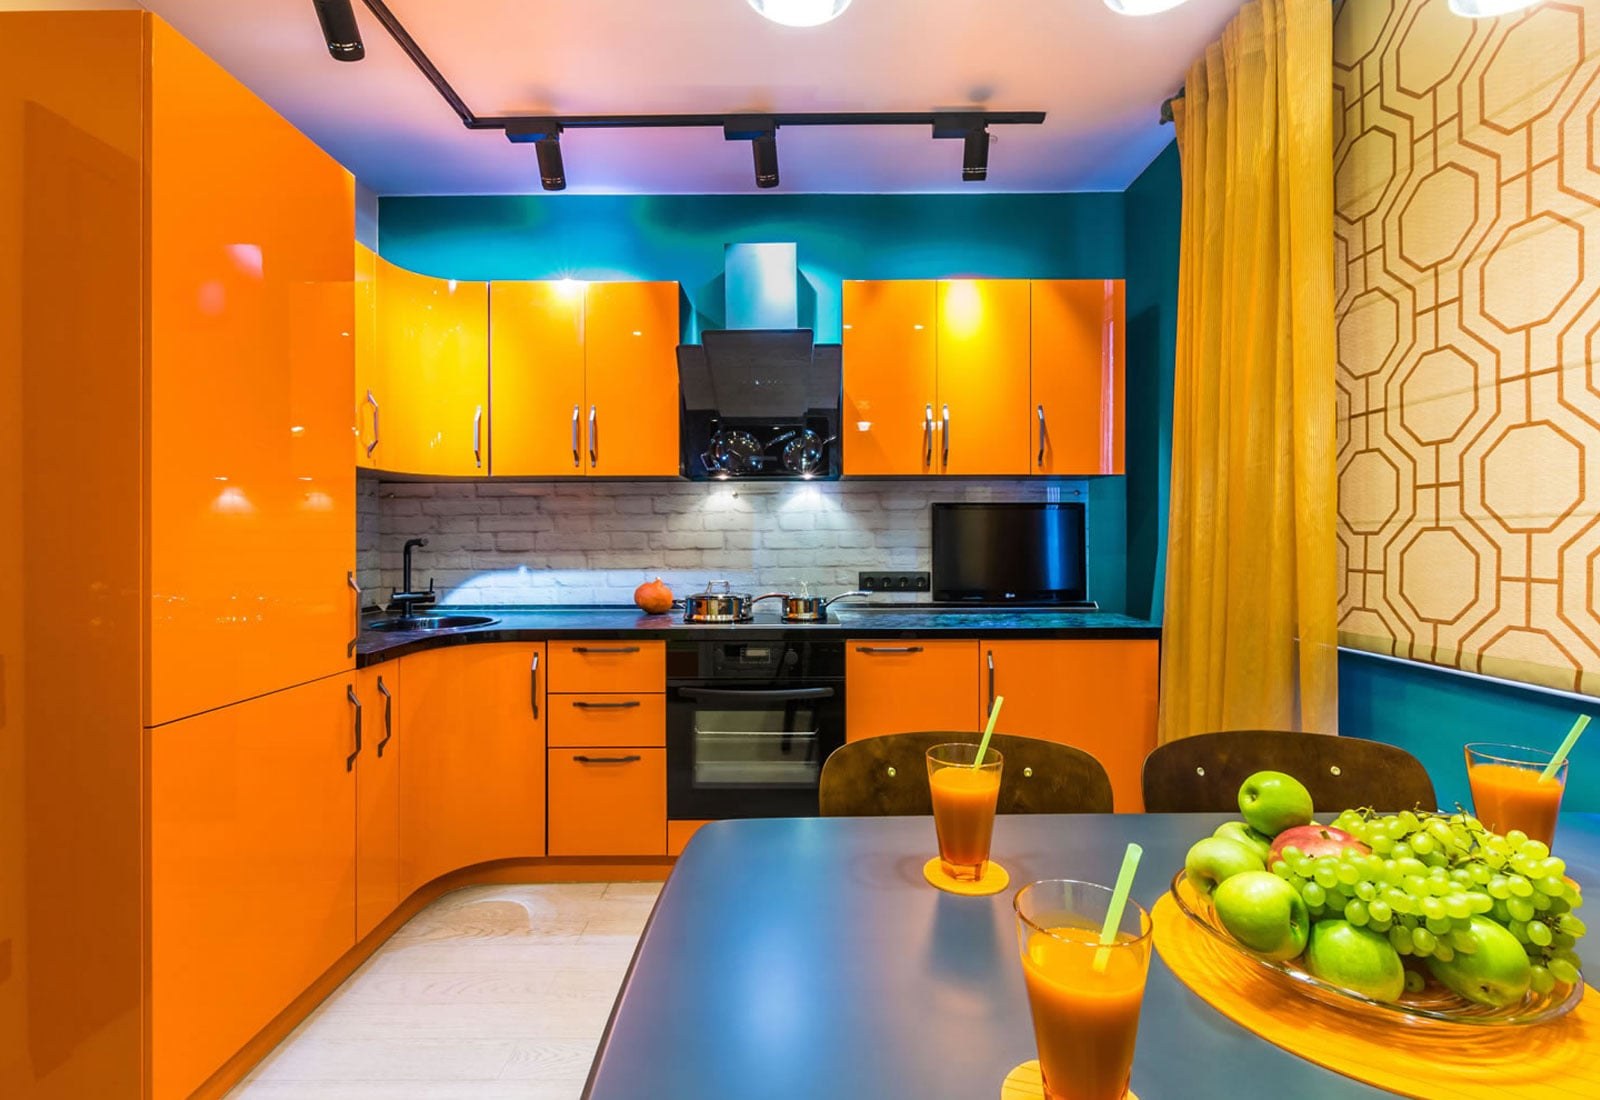 Ярки ремонтные. Оранжевая кухня в интерьере. Яркий кухонный гарнитур. Оранжевый цвет в интерьере кухни. Желто оранжевая кухня.